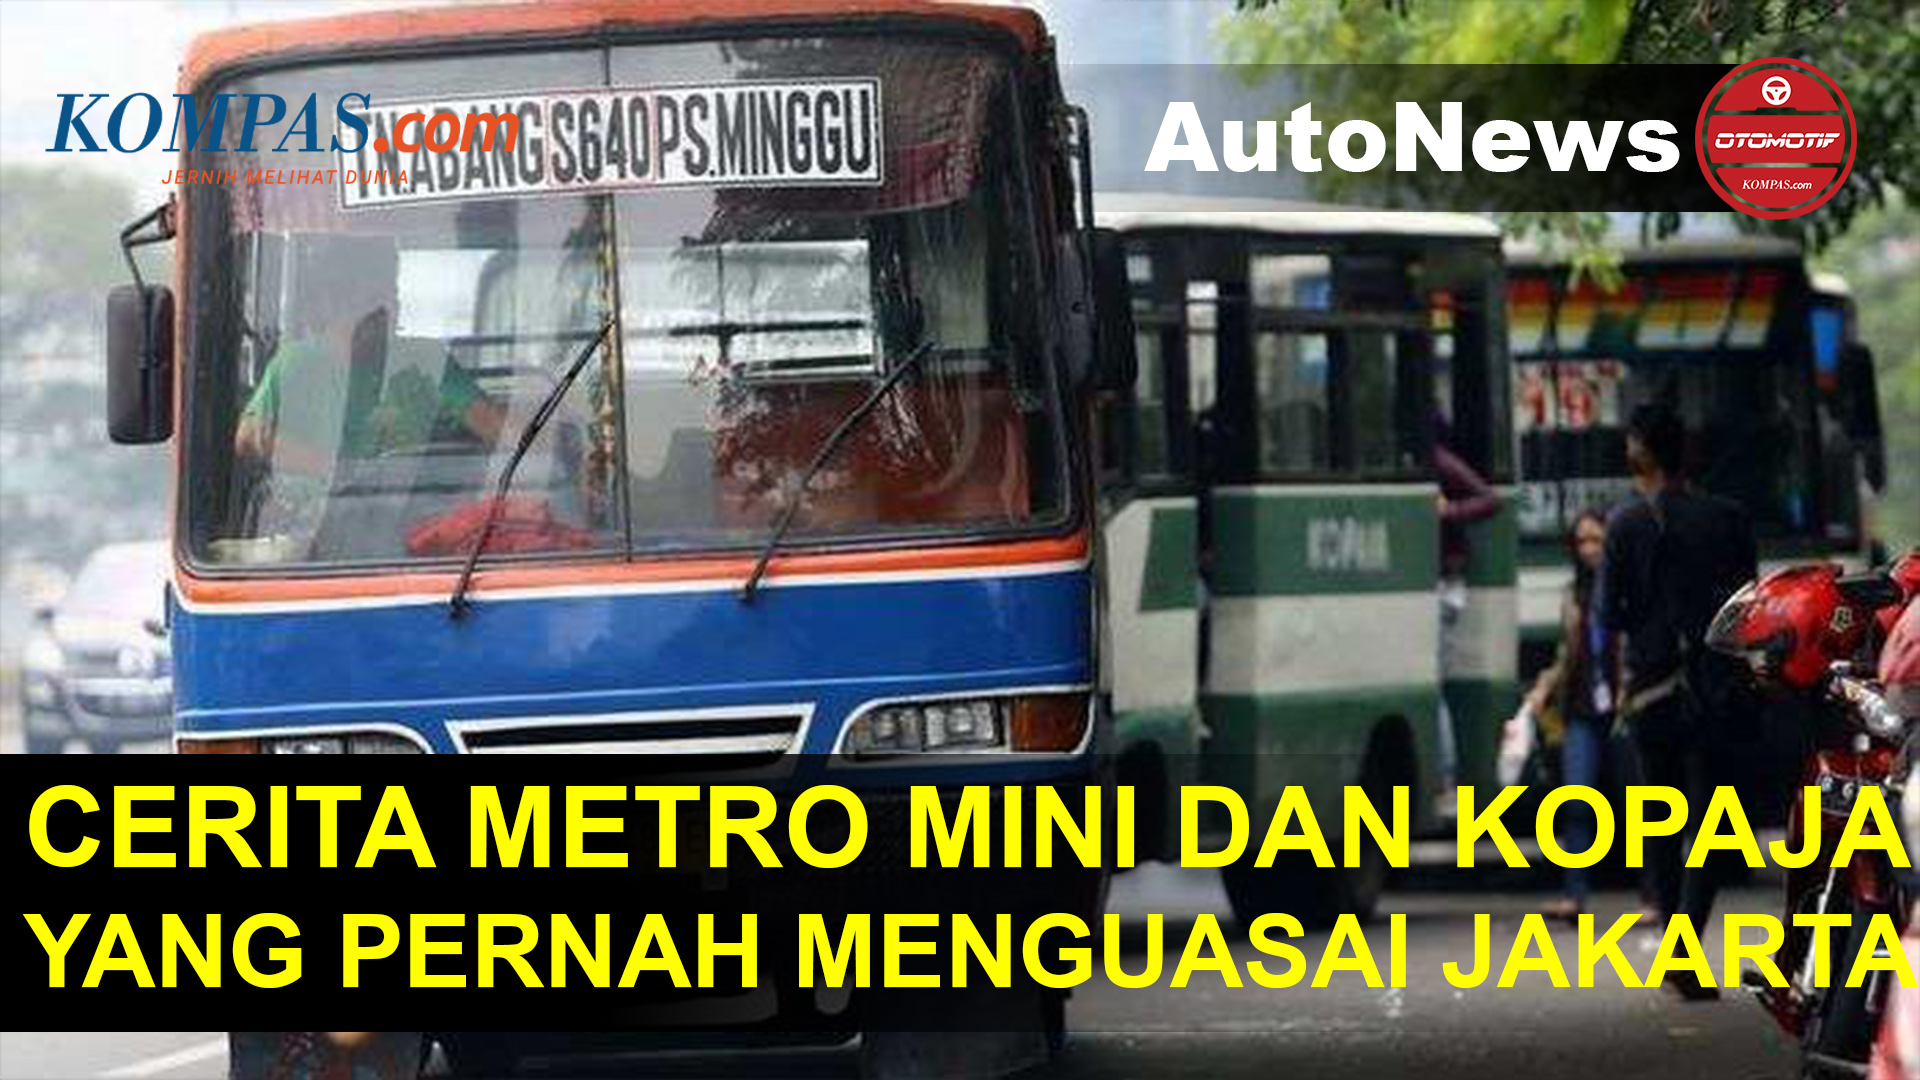 Cerita Kopaja dan Metro Mini Pernah Jadi Bus Penguasa Jakarta